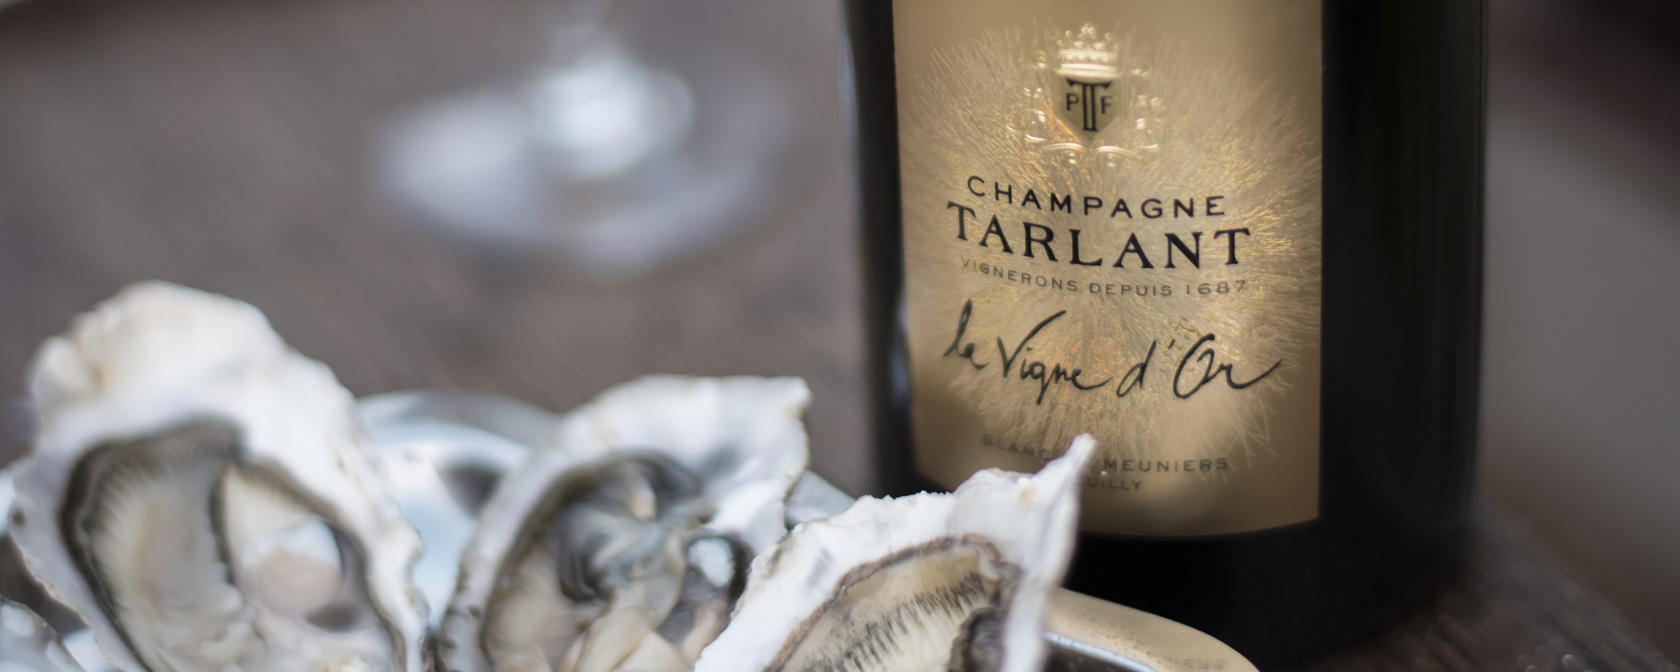 Champagne Tarlant La Vigne d'Or